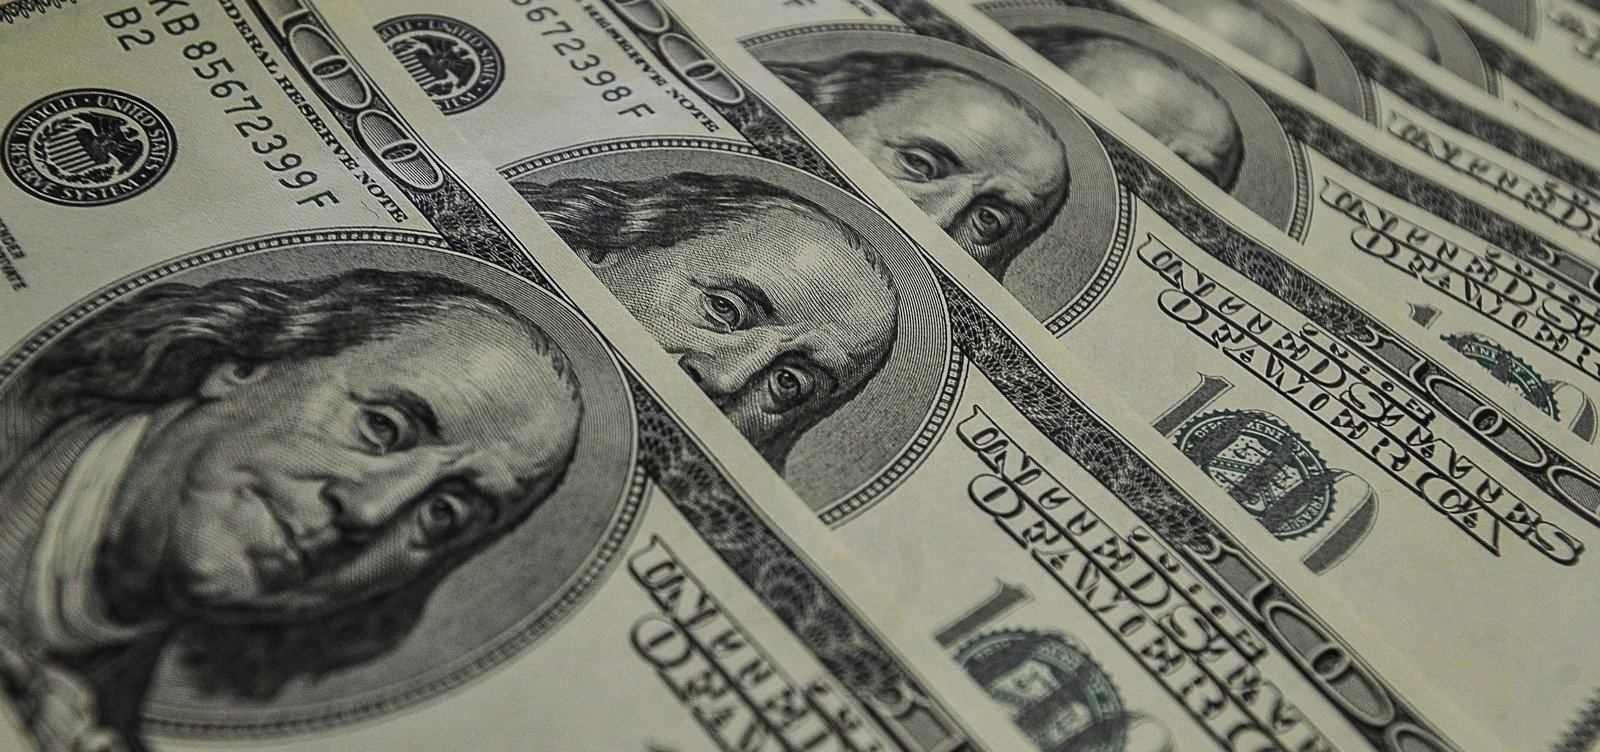 Após debate presidencial nos EUA, dólar oscila sem direção definida e termina em queda